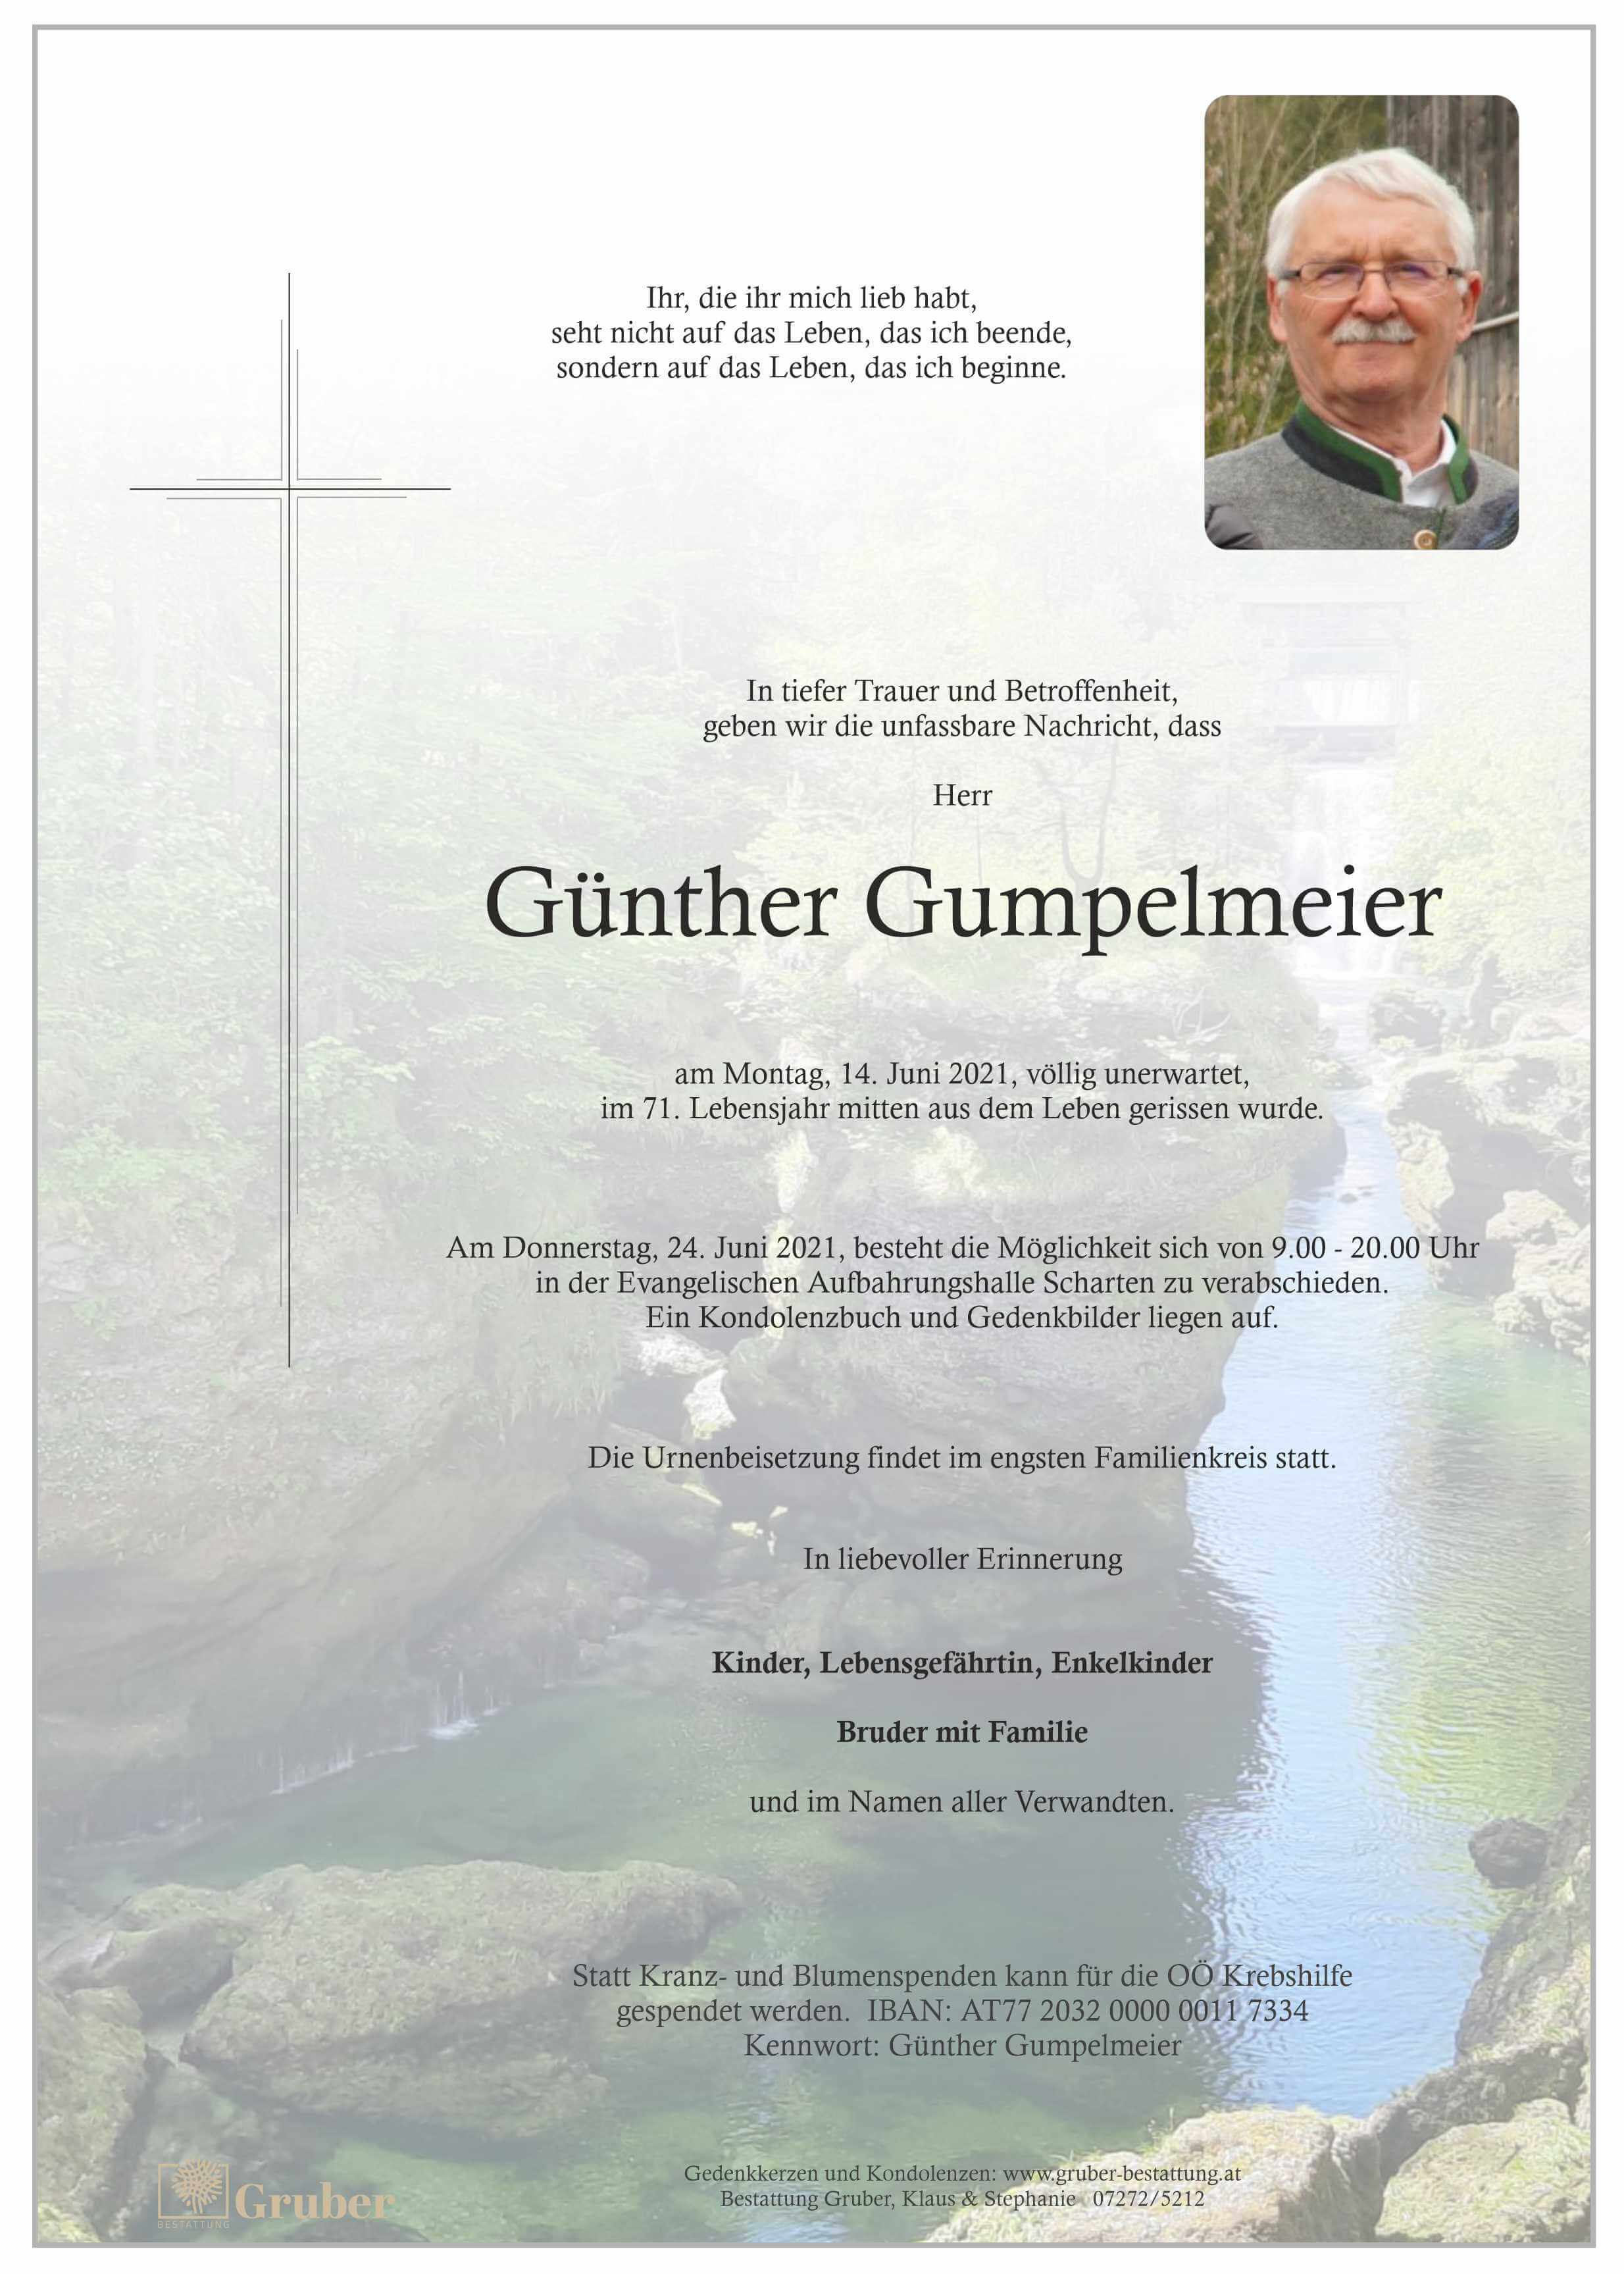 Günther Gumpelmeier (Scharten Evang)